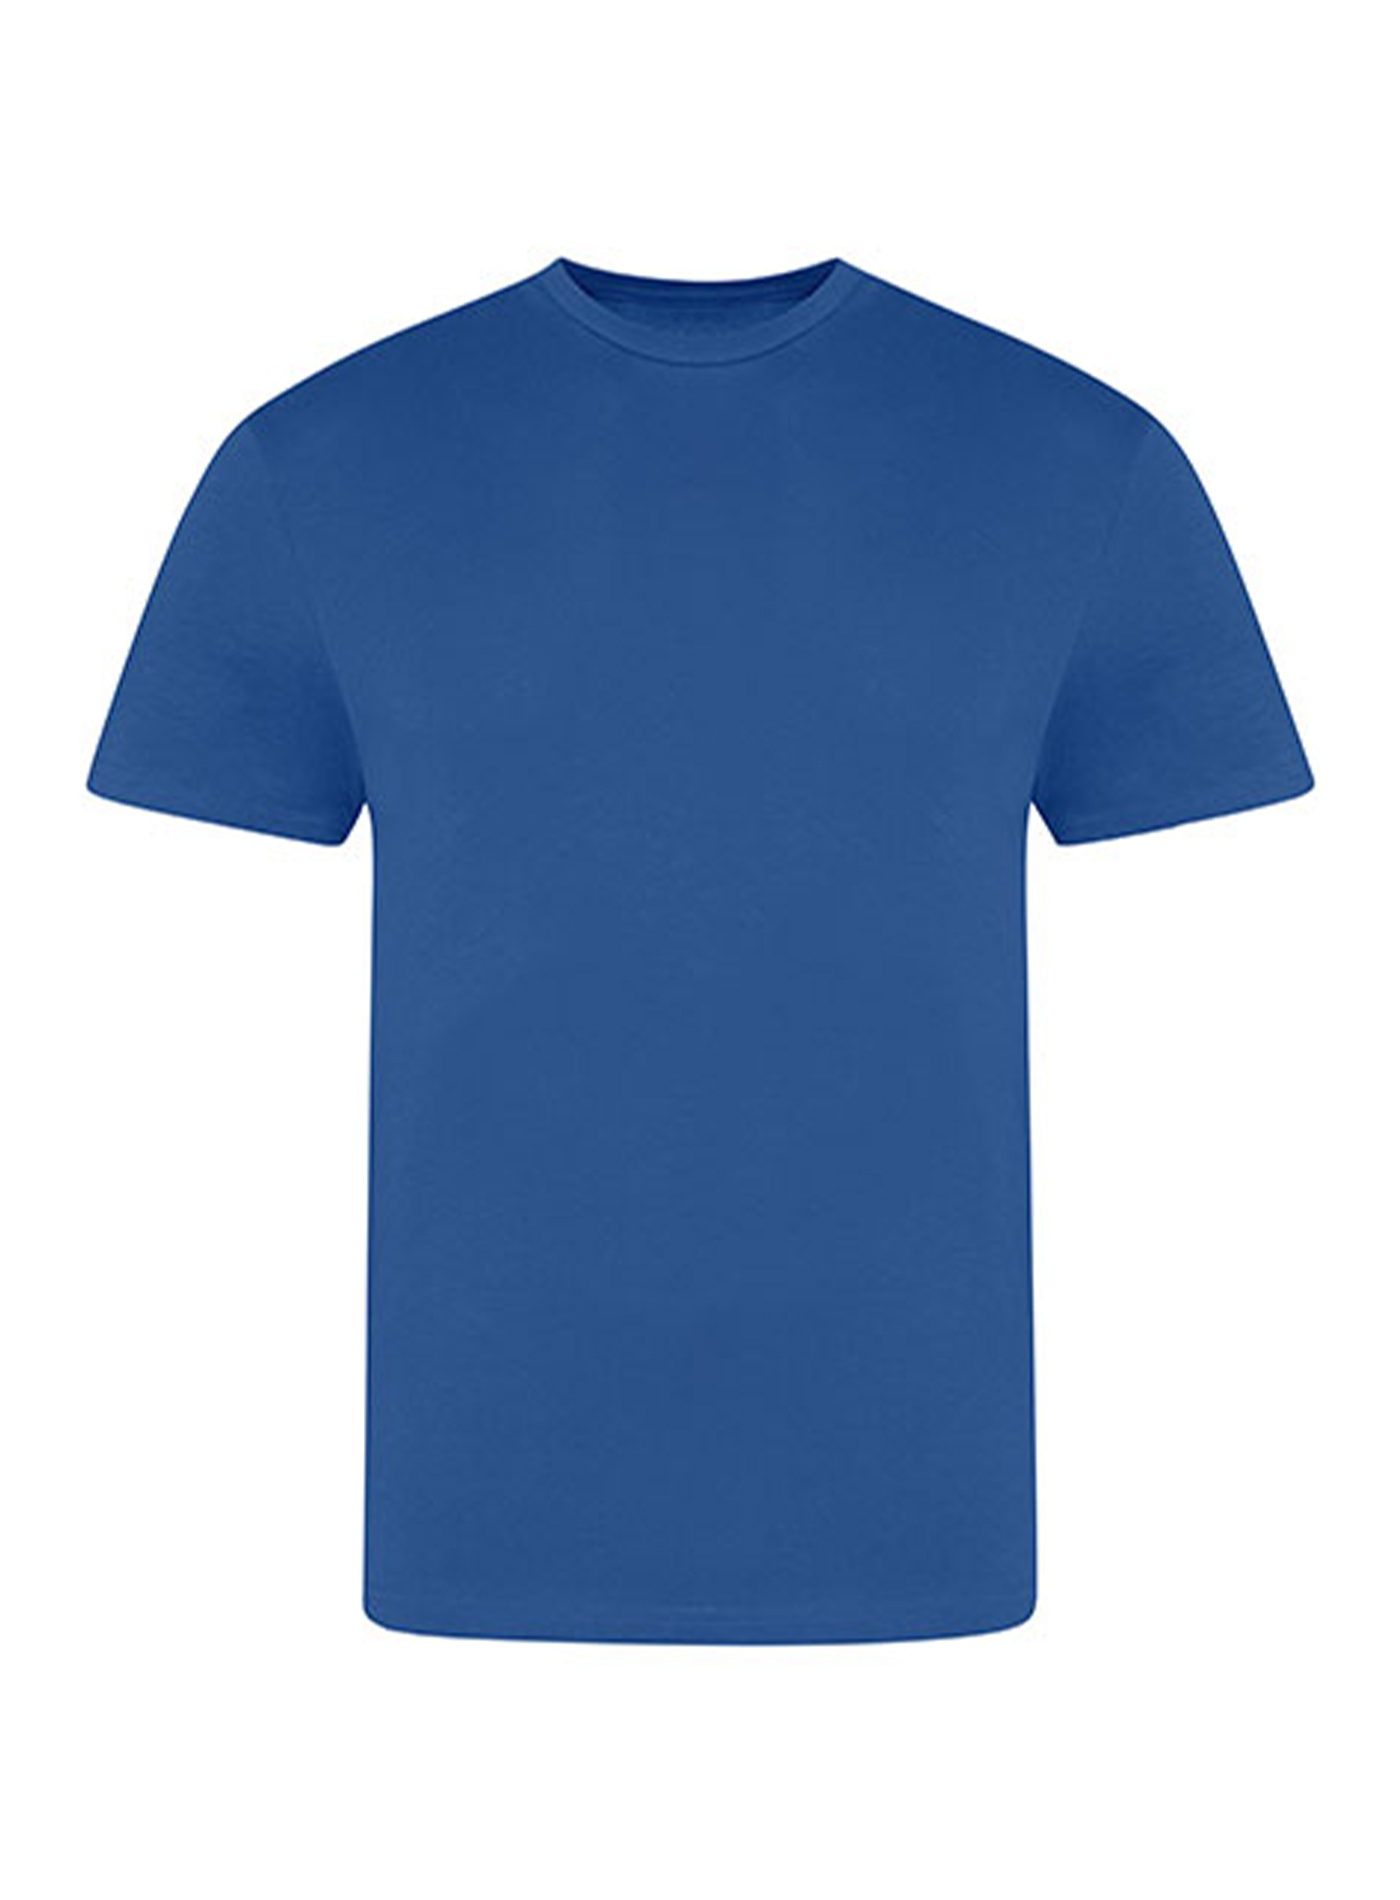 Pánské tričko Just Ts - královská modrá XL